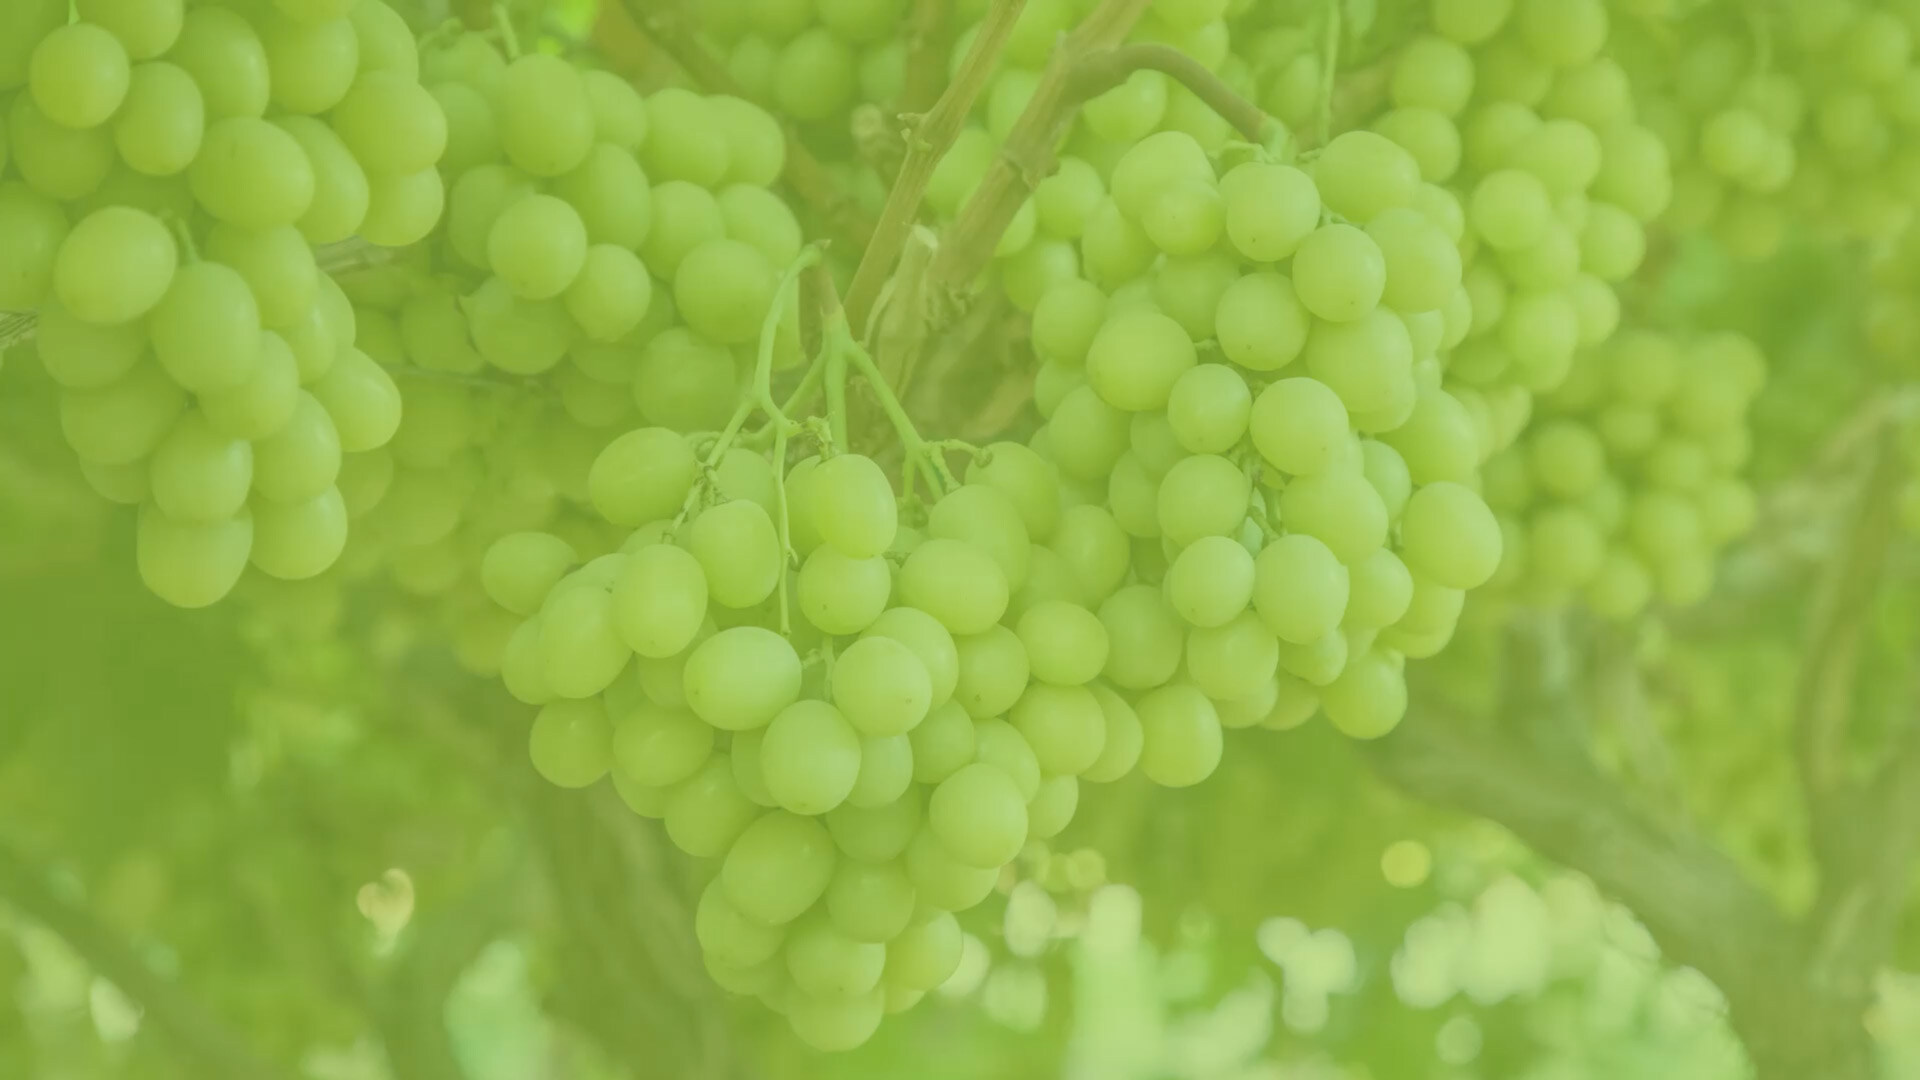 Bundles of AUTUMNCRISP grapes on the vine